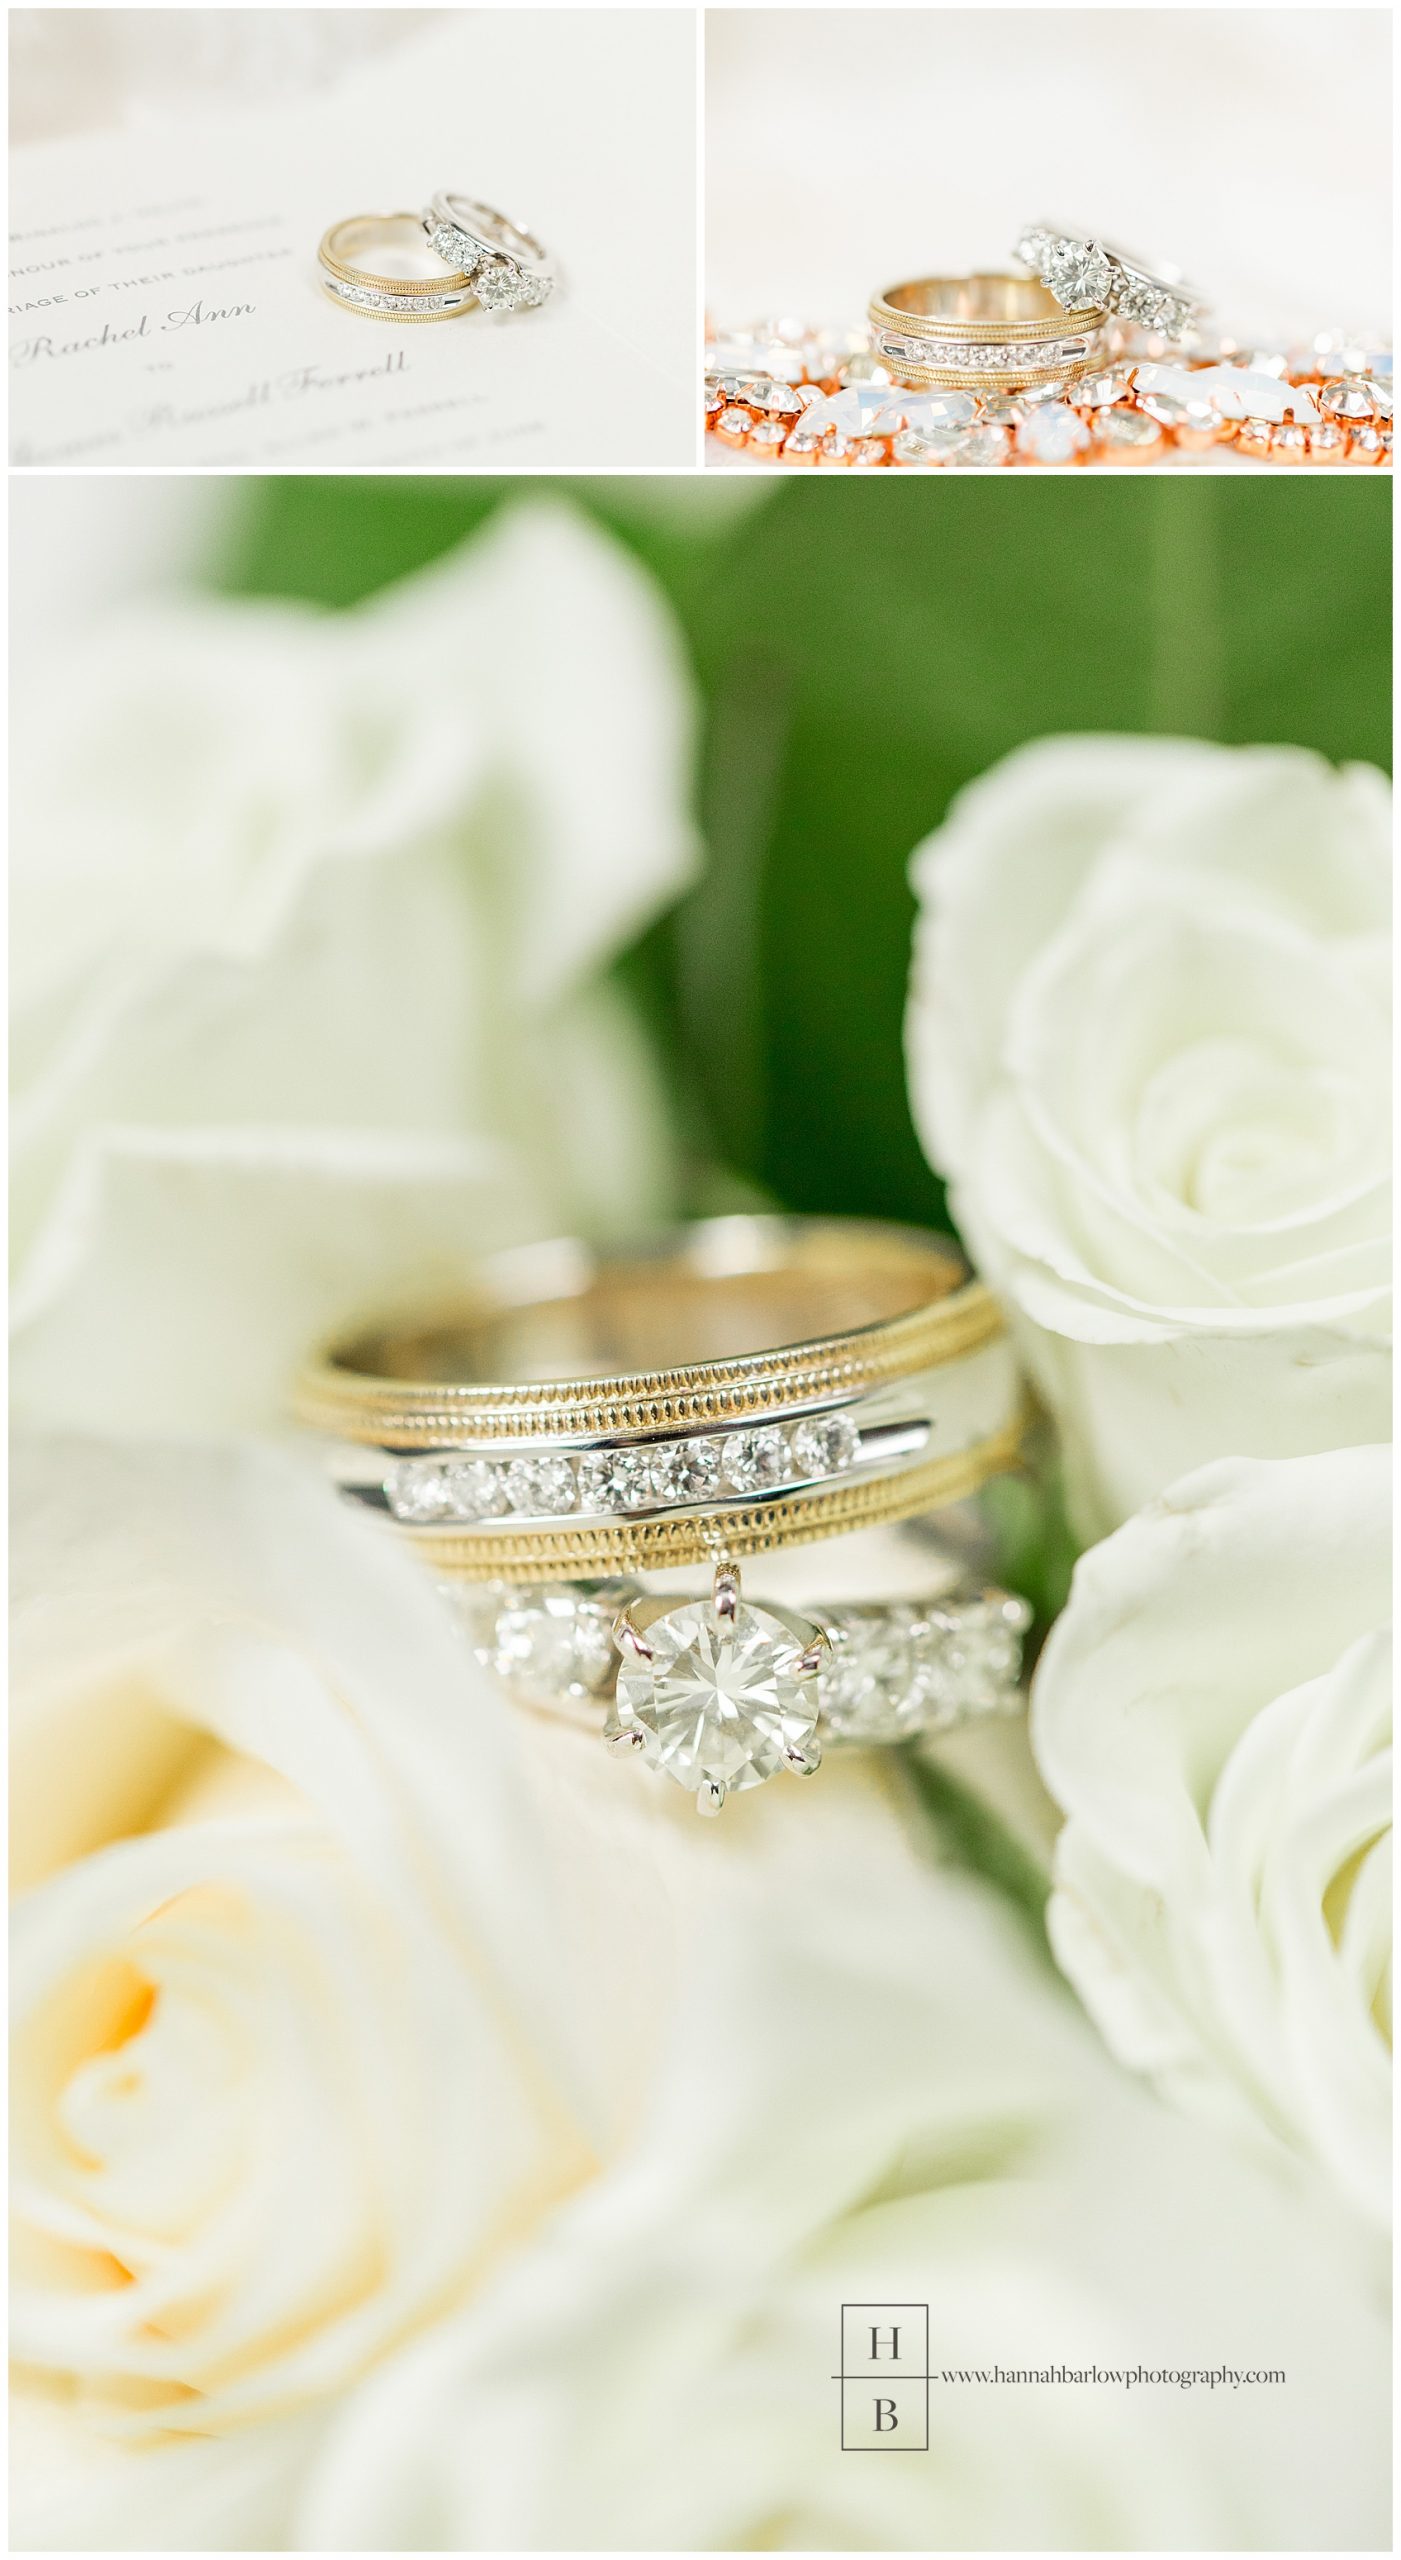 Wedding Ring Photos in Weirton, WV